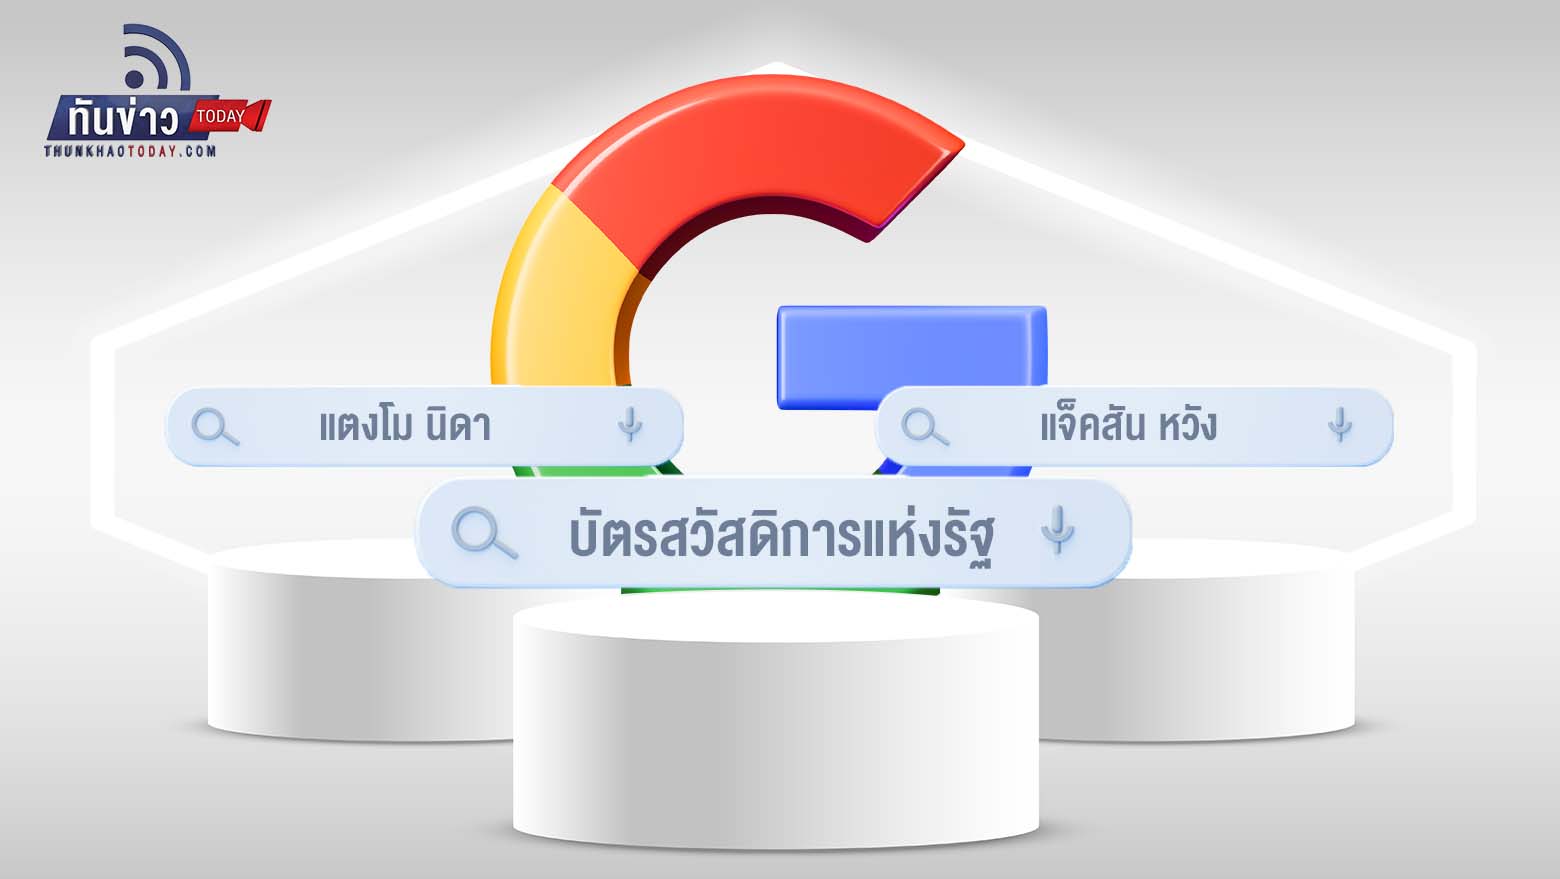 Google เผยคำที่ถูกค้นหามากที่สุดในไทยปี’ 65  คือ“บัตรสวัสดิการแห่งรัฐ" ตามมาด้วย "แตงโม นิดา" "แจ็คสัน หวัง" และ“นะหน้าทอง” เพลงฮิต 150 ล้านวิว